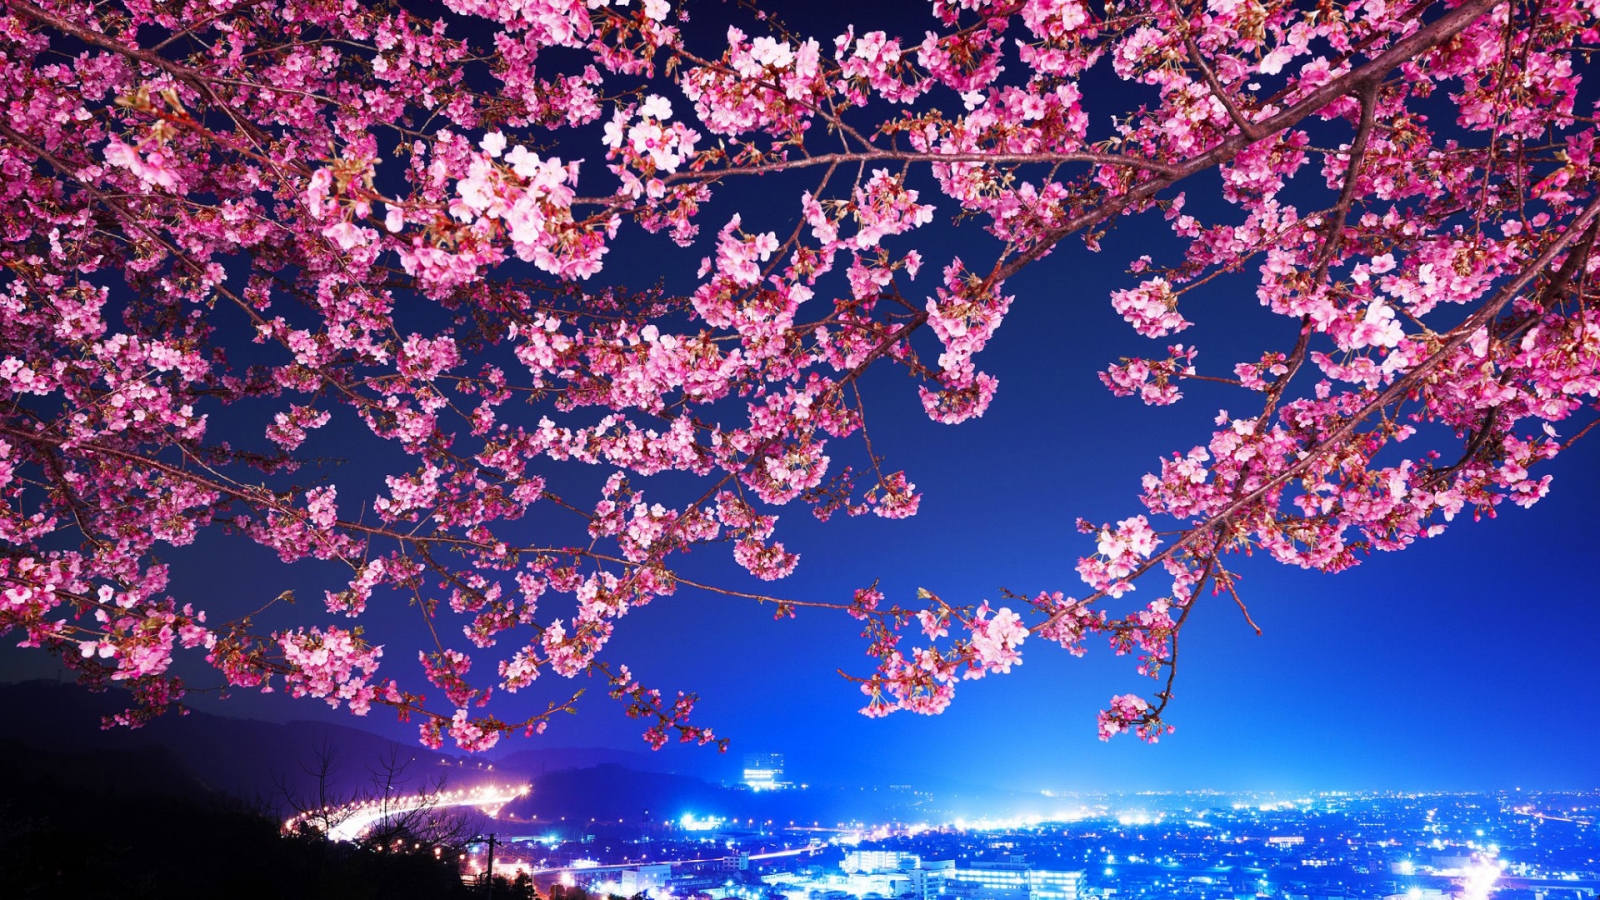 Lovely Cherry Blossom for 1600 x 900 HDTV resolution